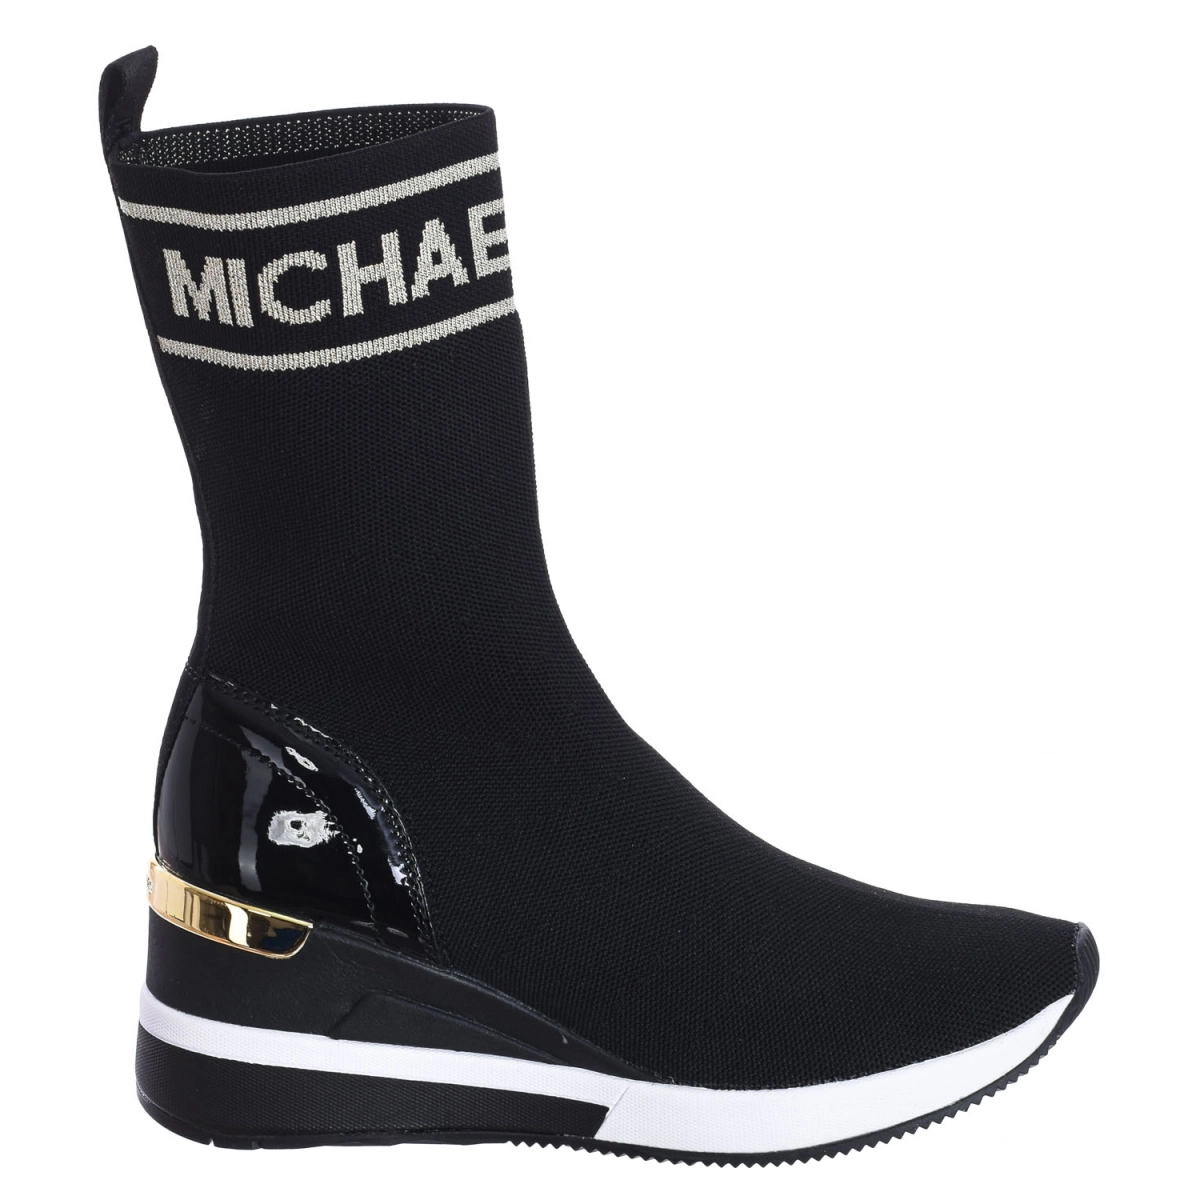 Zapatilla Sneaker Skyler tipo calcetín de punto elástico Michael Kors F2SKFE5D mujer Talla: 36.5 Color: Negro F2SKFE5D-BLK-PALEGOLD.36.5